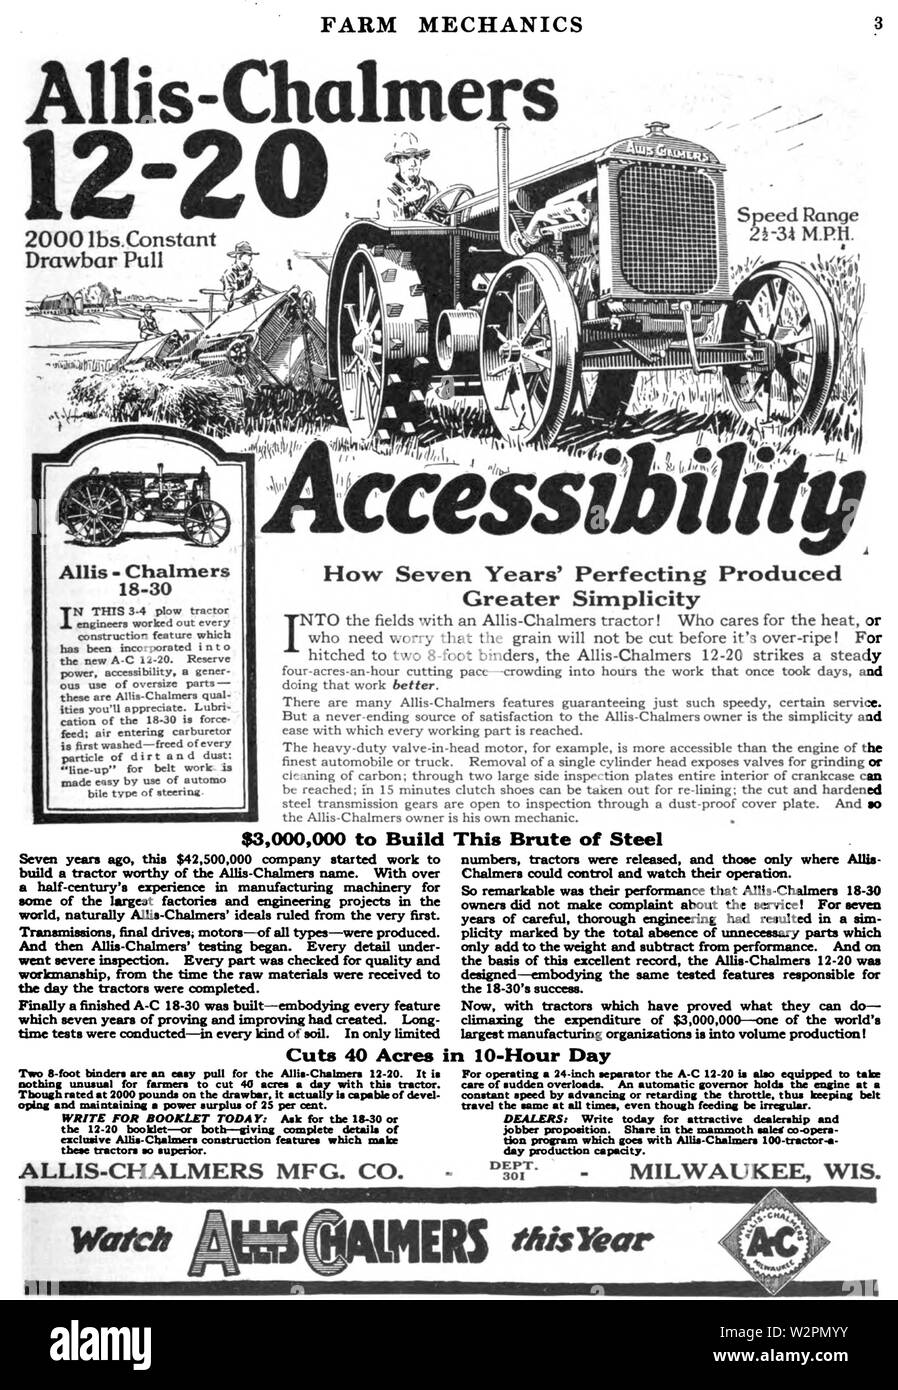 Tracteur Allis-Chalmers annonce dans la mécanique agricole Mai 1921 v5 n1 p3 Banque D'Images